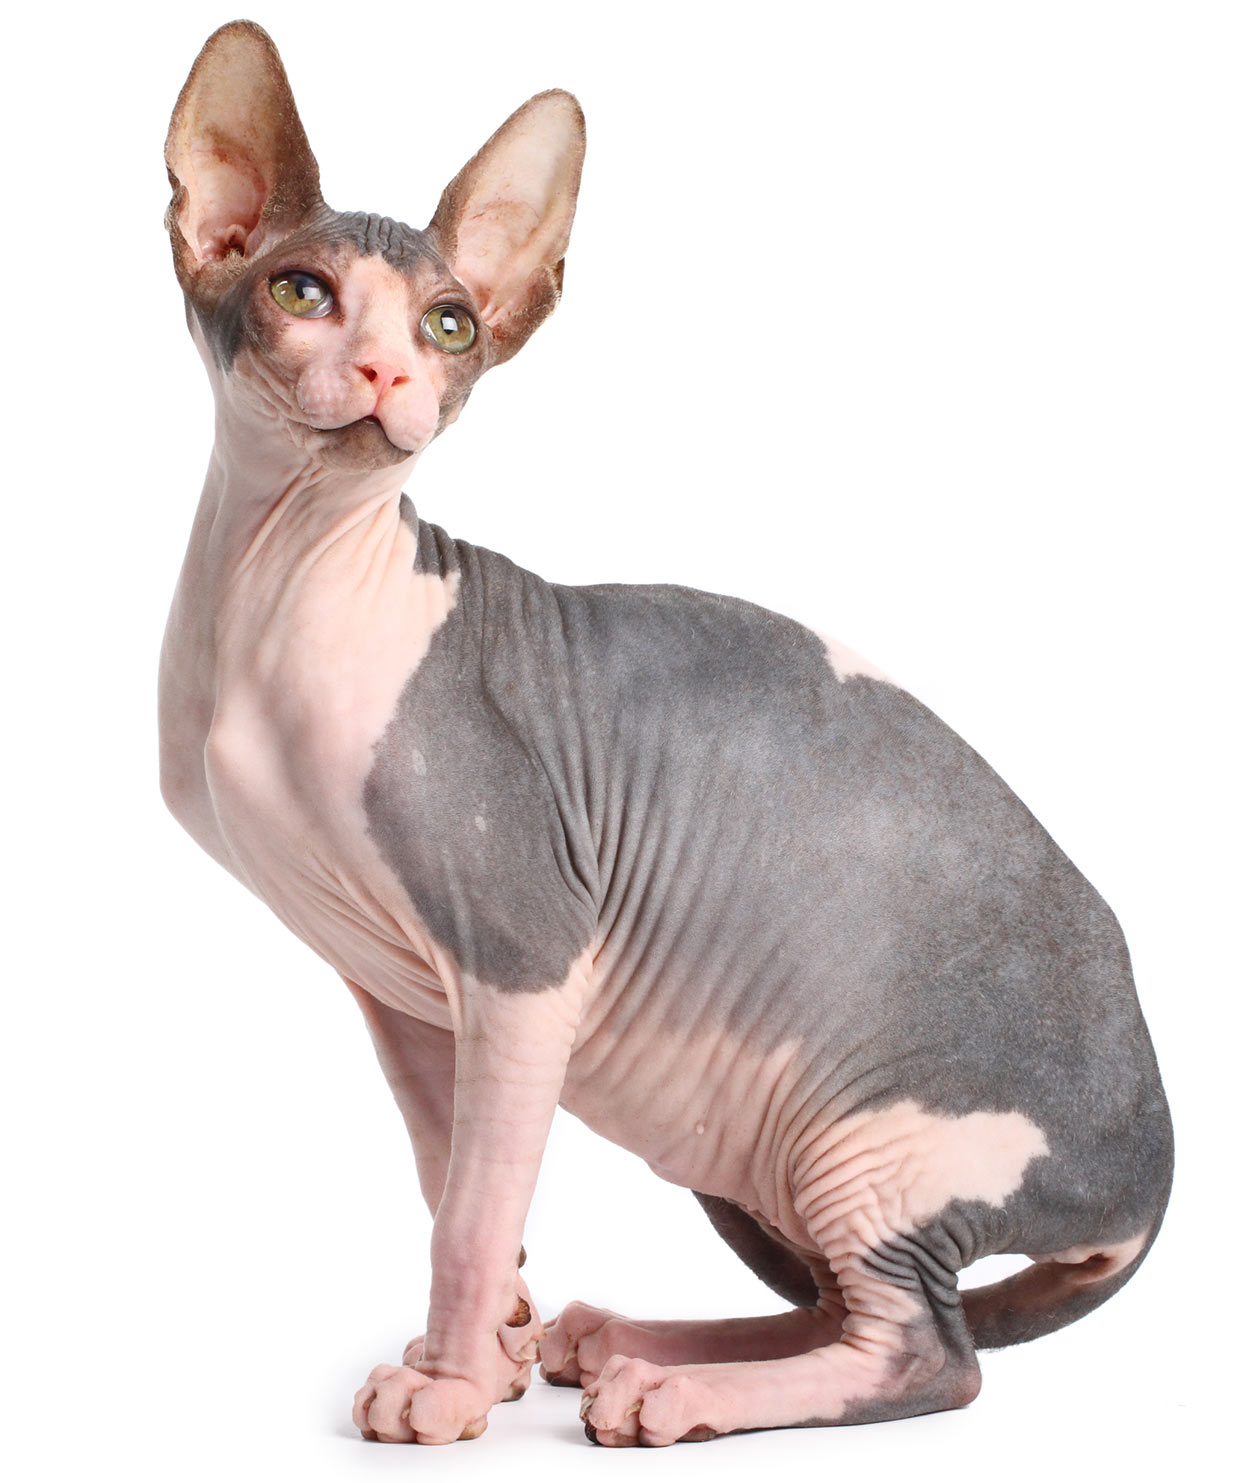 a bald cat